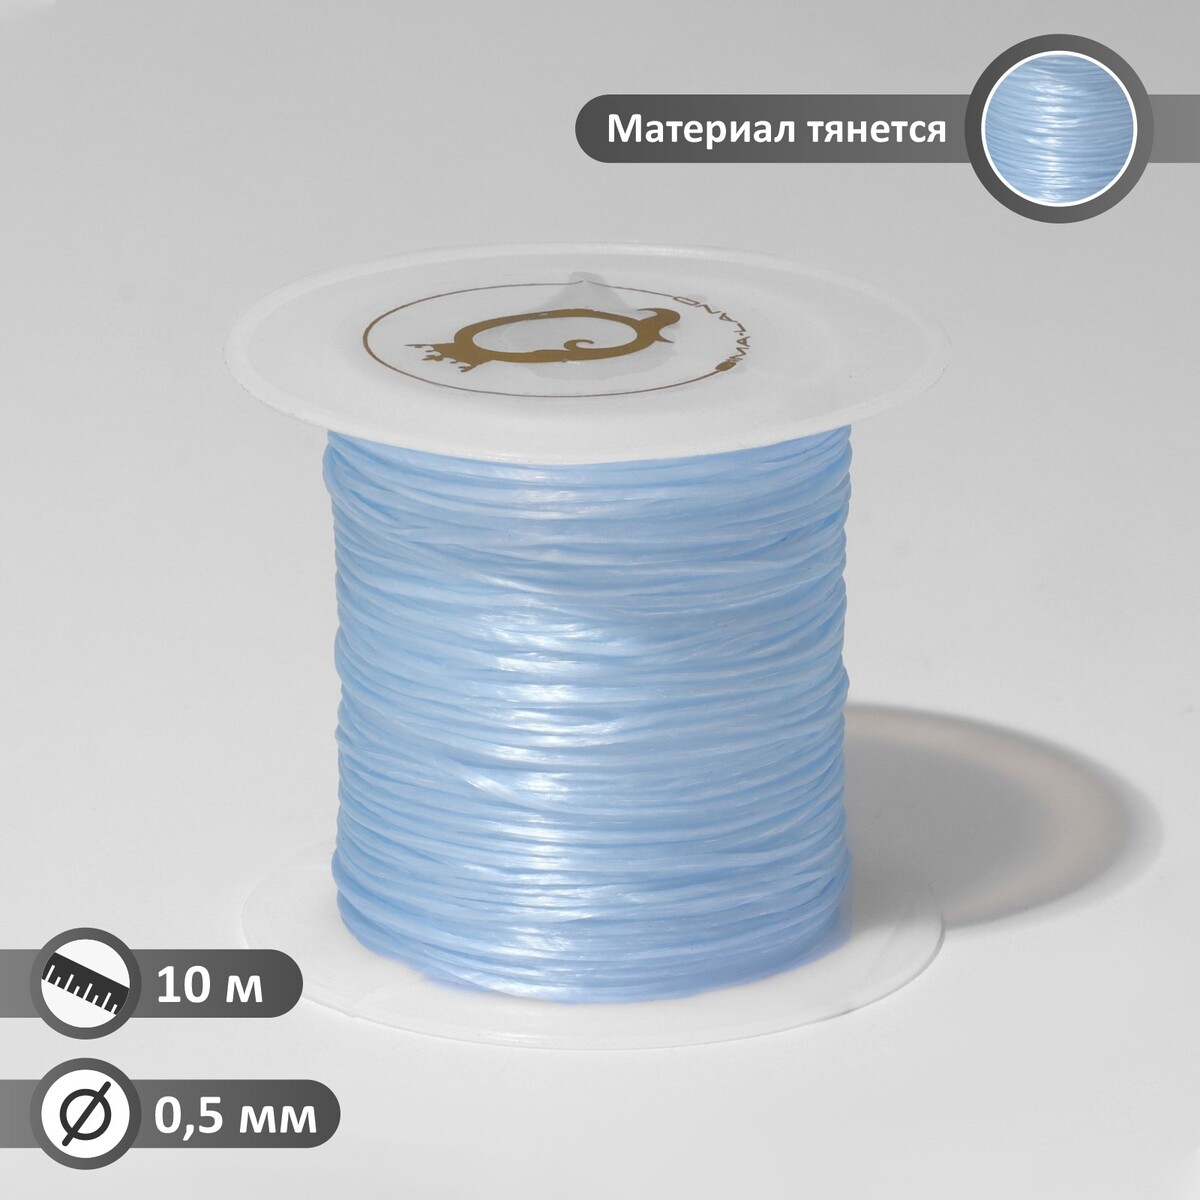 Нить силиконовая (резинка) d=0,5 мм, l=10 м (прочность 2250 денье), цвет голубой